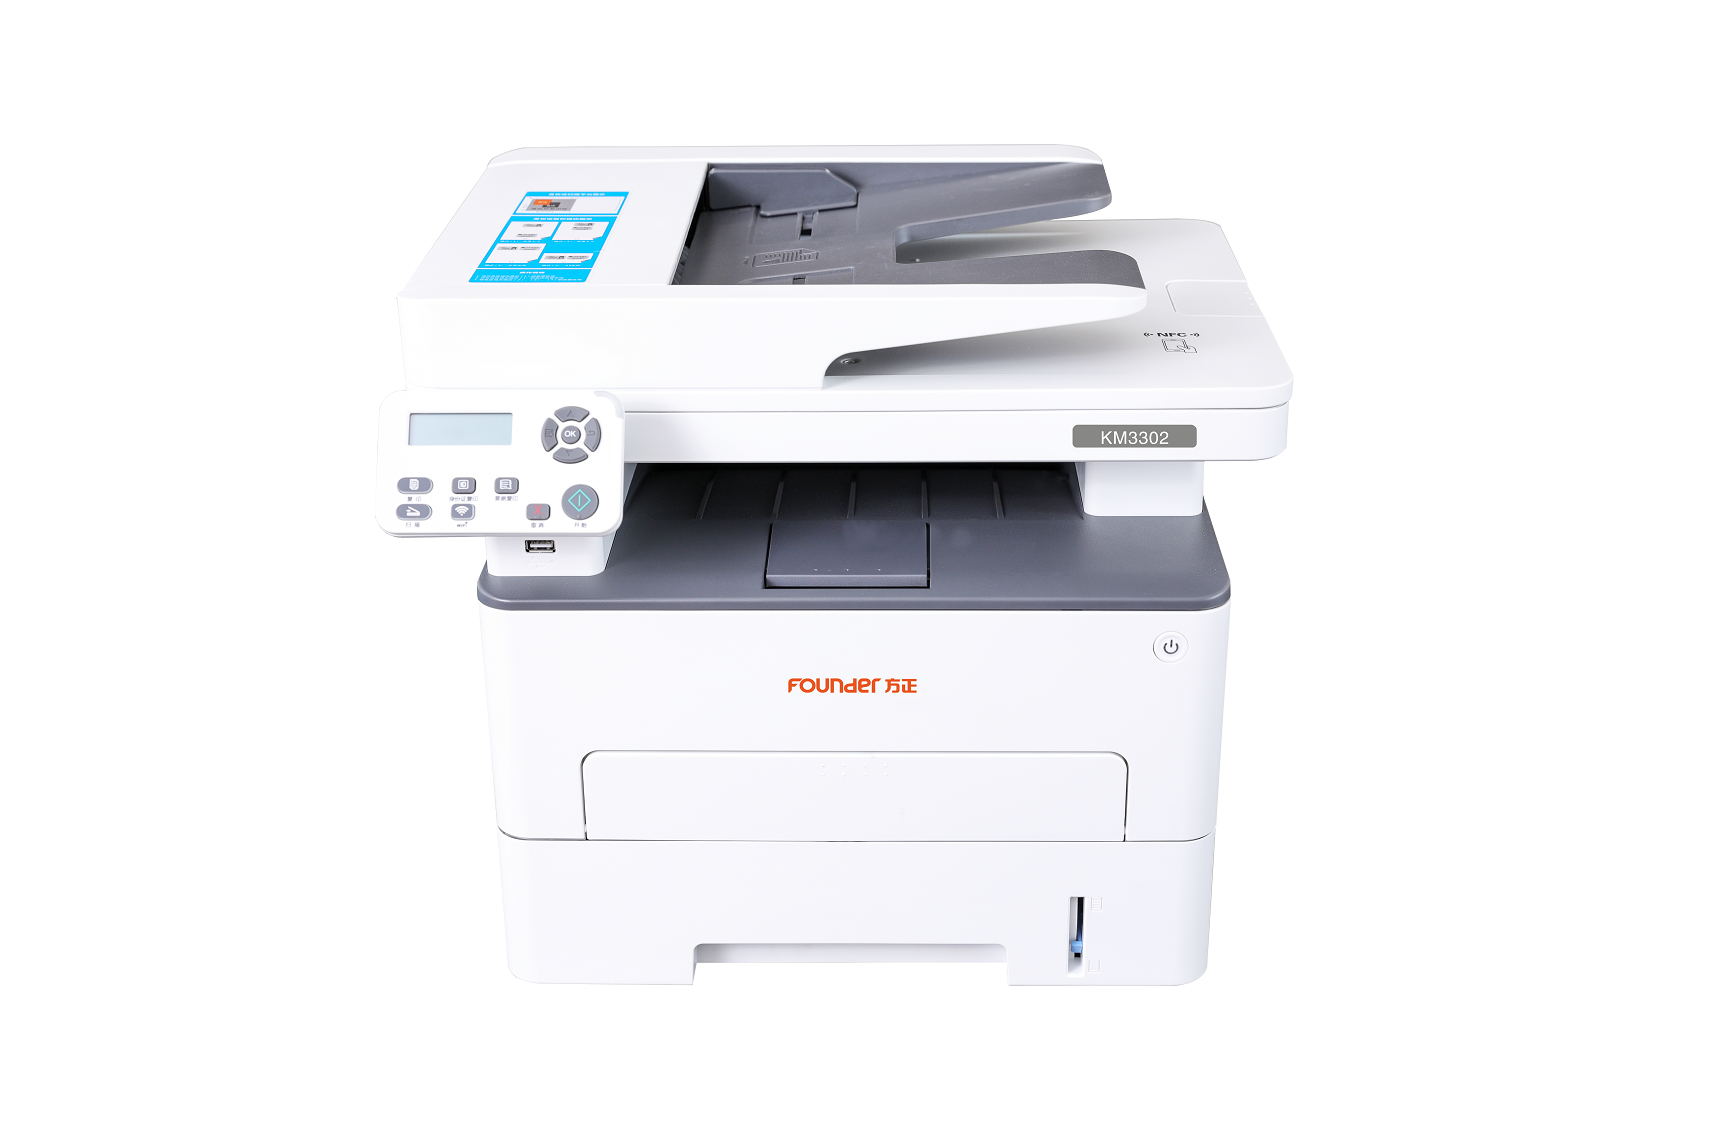 方正/Founder KM3302 A4黑白打印机